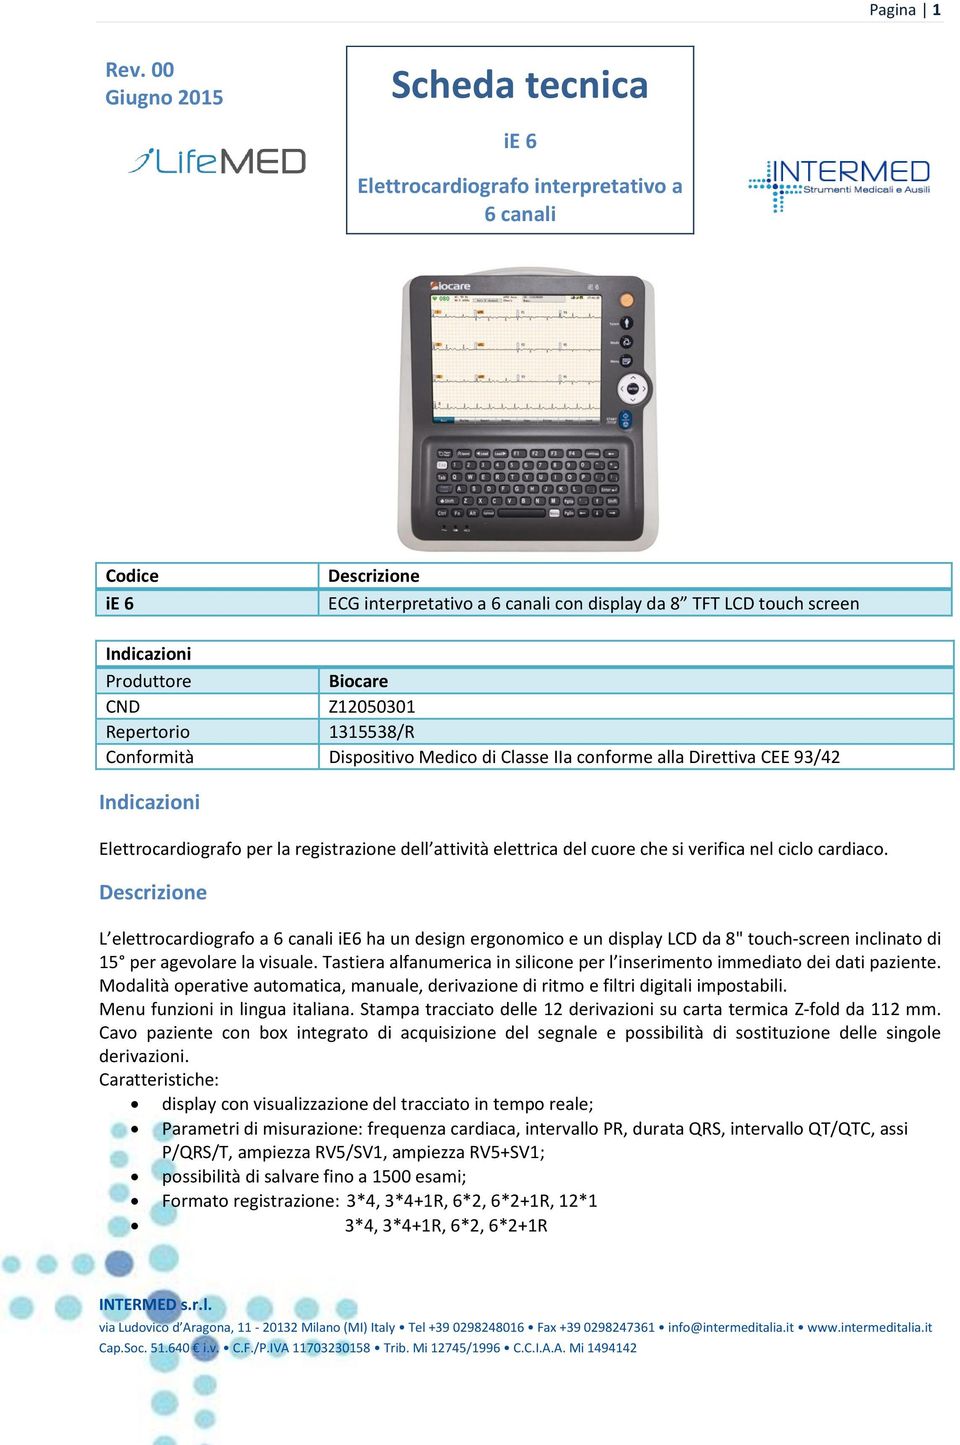 Biocare CND Z12050301 Repertorio 1315538/R Conformità Dispositivo Medico di Classe IIa conforme alla Direttiva CEE 93/42 Indicazioni Elettrocardiografo per la registrazione dell attività elettrica